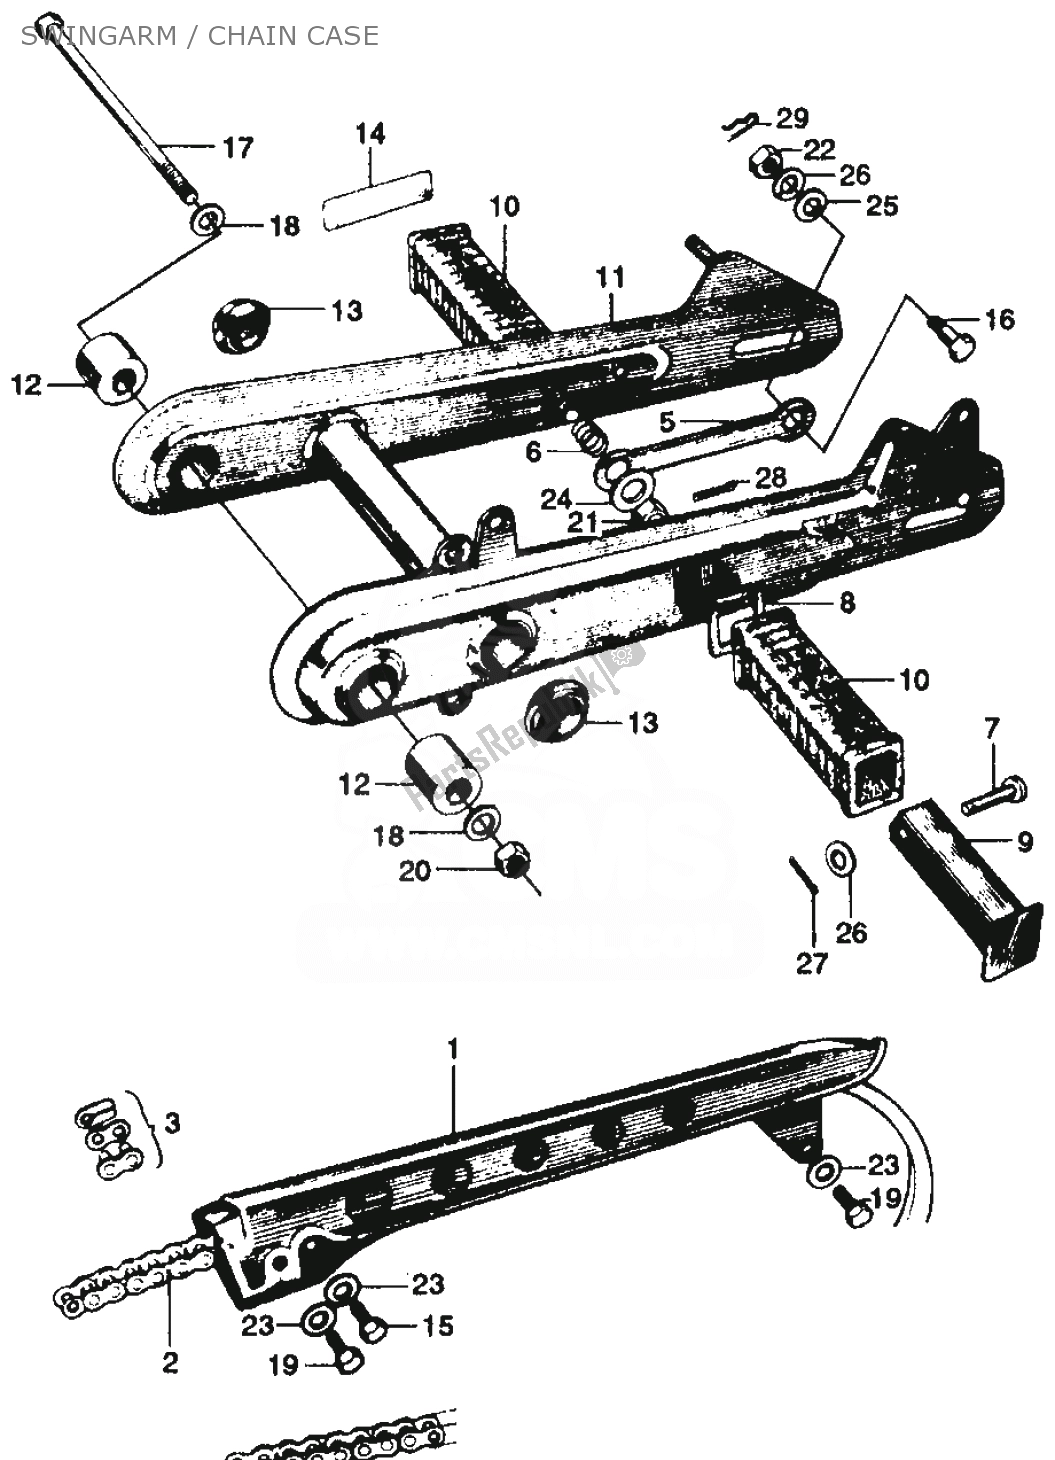 Toutes les pièces pour le Swingarm / Chain Case du Honda SS 125 1967